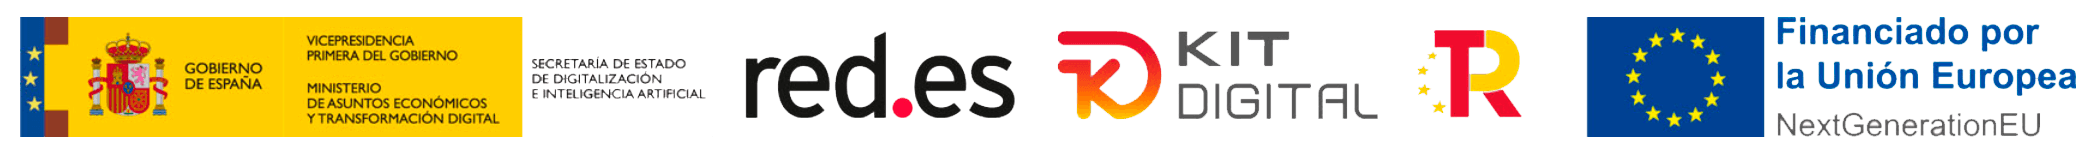 Logotipos Kit Digital